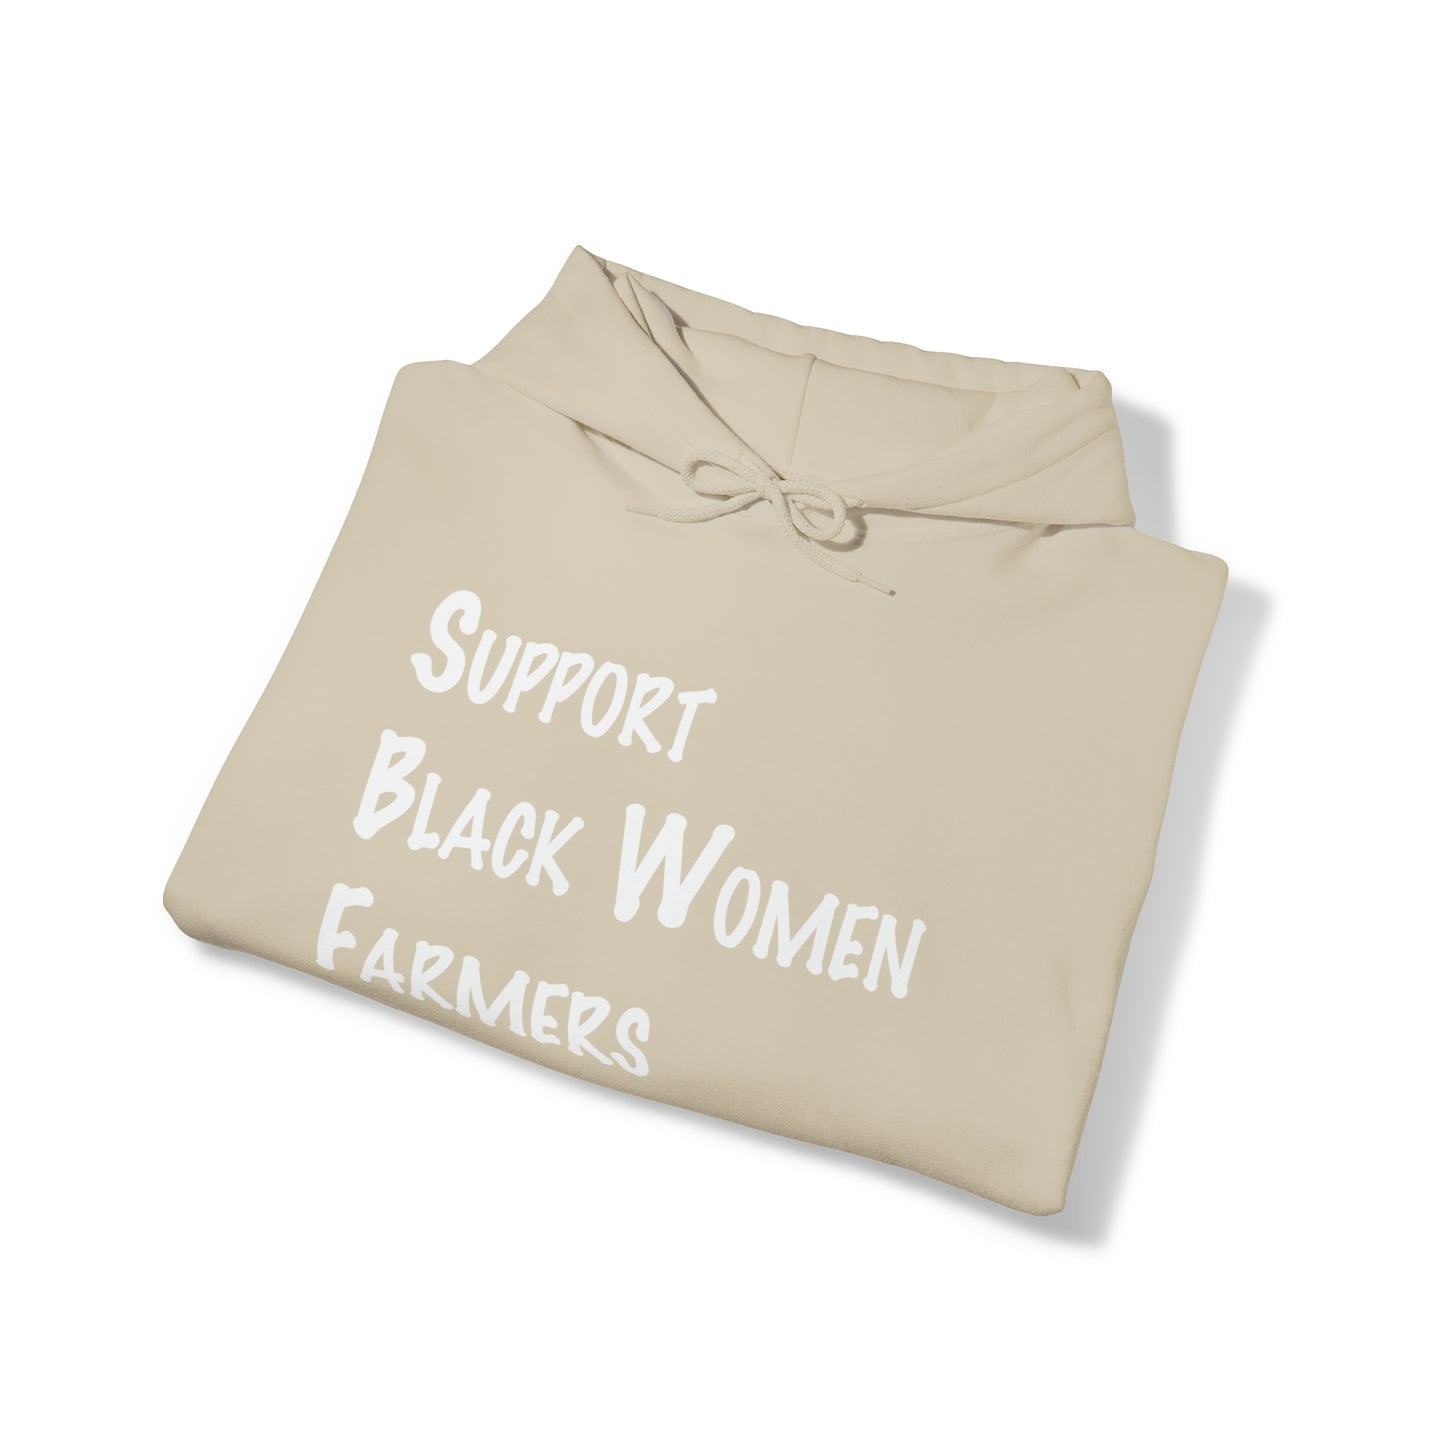 Support Black Women Farmers